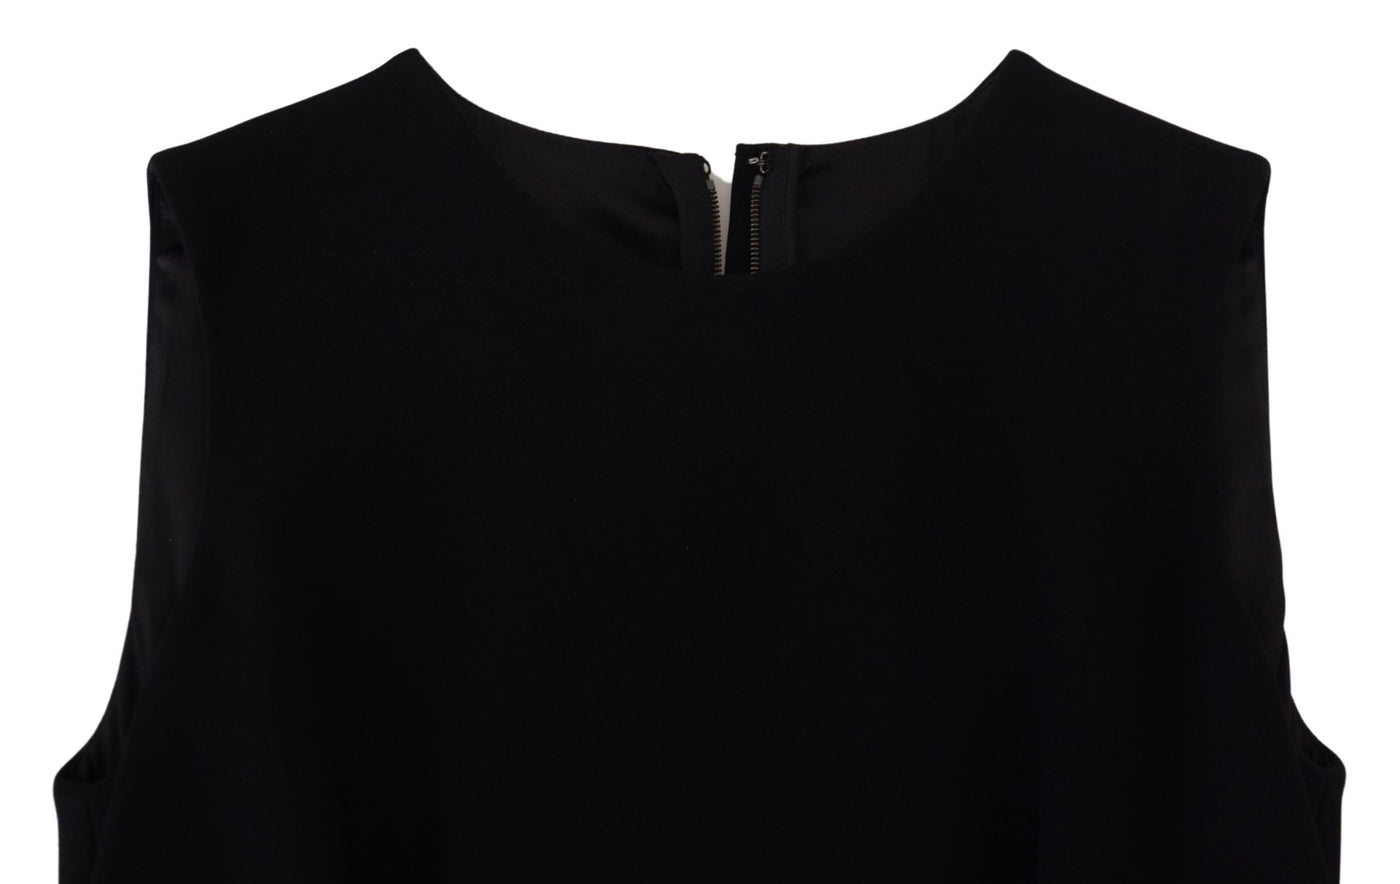 Dolce & Gabbana Black Dress Sheath Flare Viscose Dress